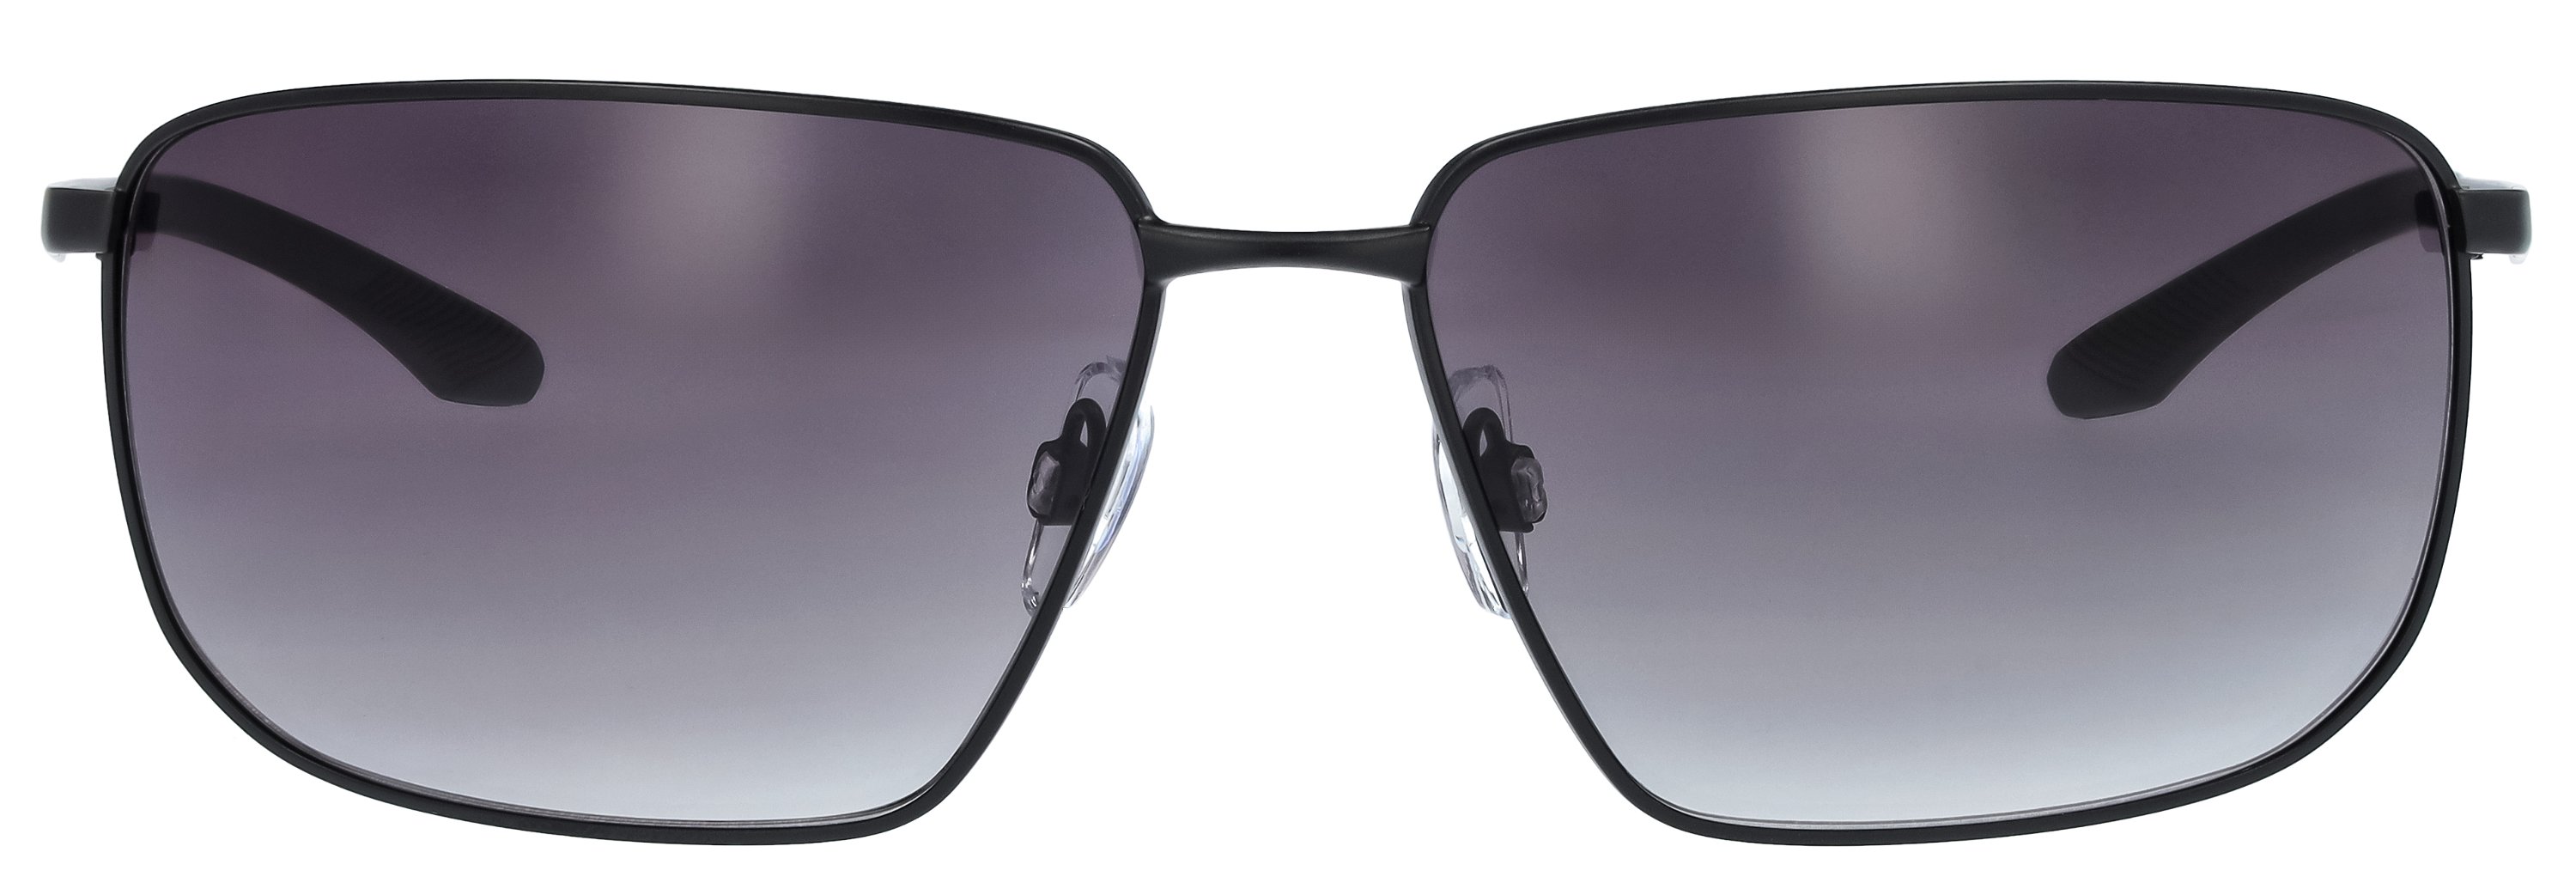 Das Bild zeigt die Sonnenbrille 721162 von der Marke Abele Optik in schwarz.